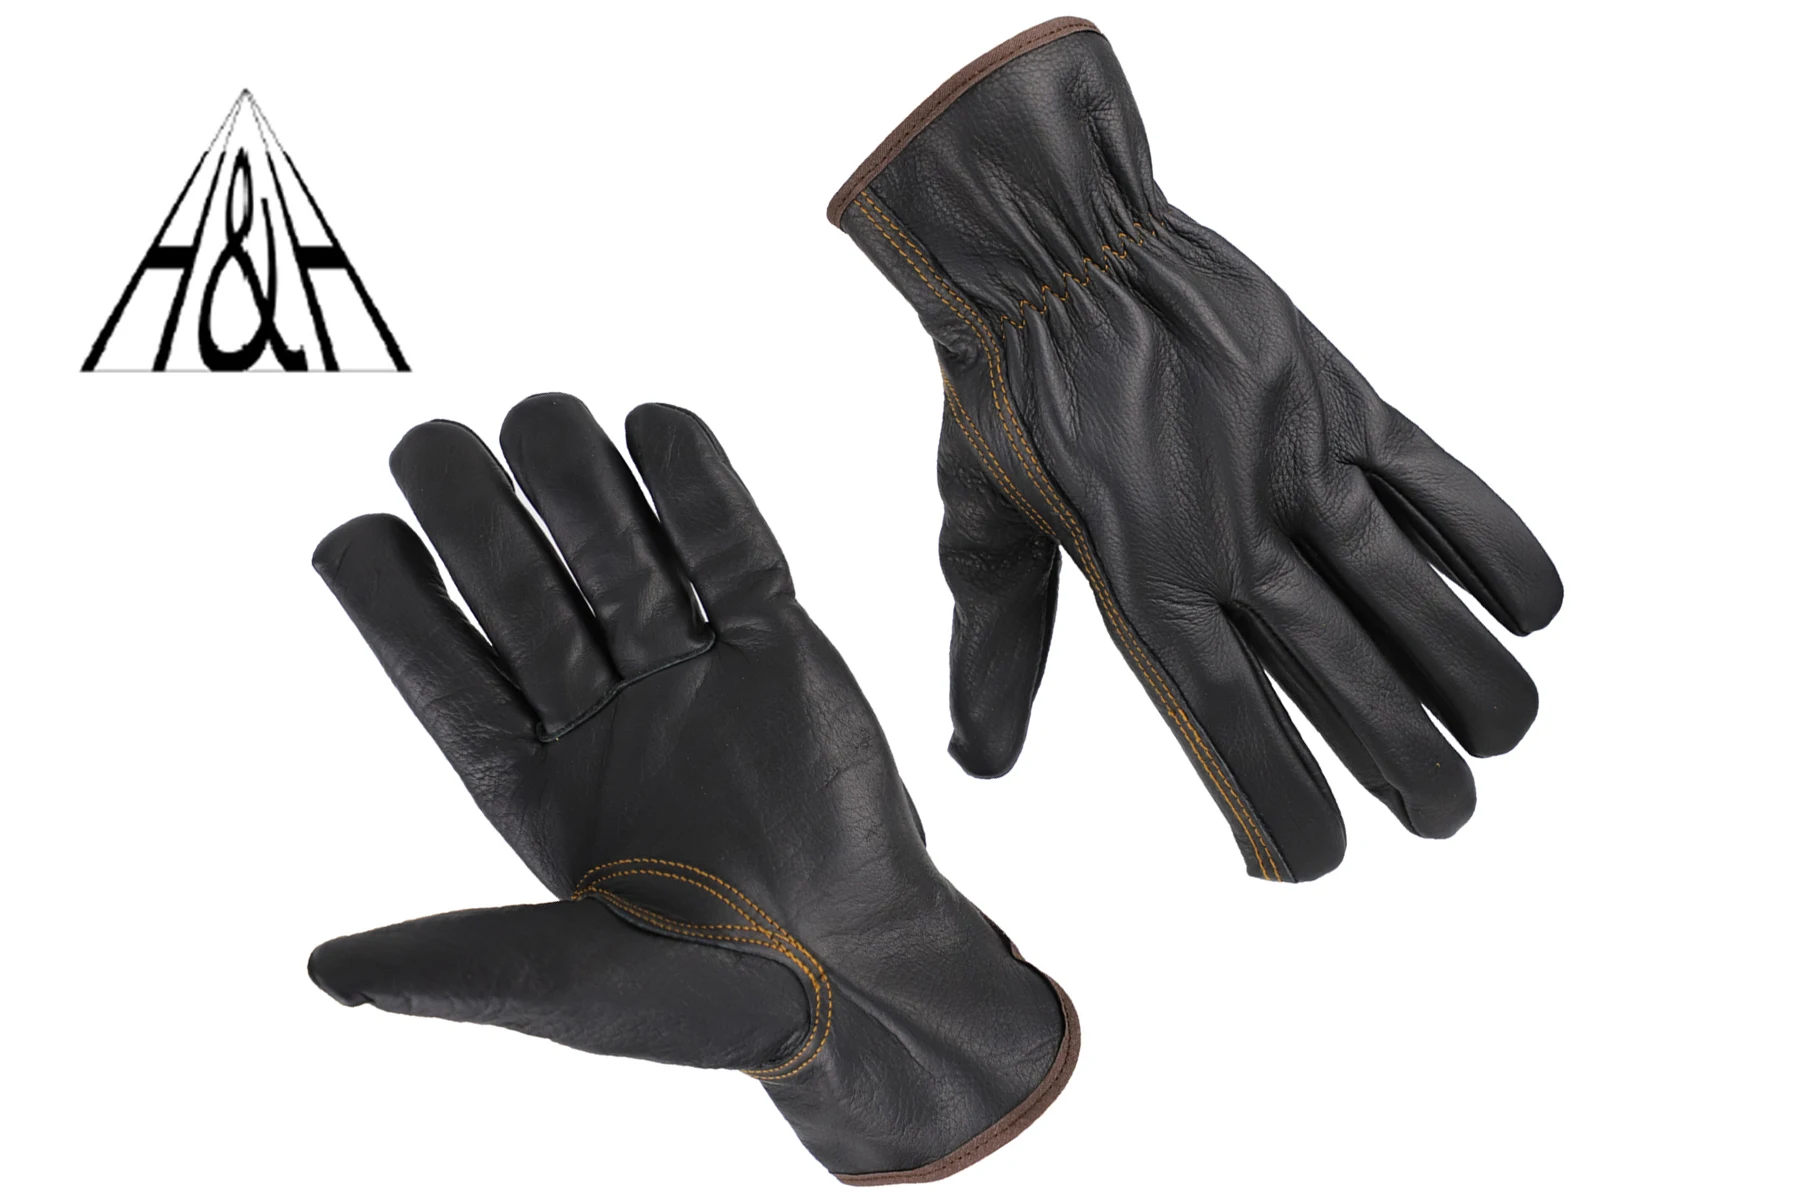 

Рабочие кожаные перчатки с теплой подкладкой HHPROTECT, плотные садовые перчатки из воловьей кожи, очень мягкие и впитывающие пот, для садоводства